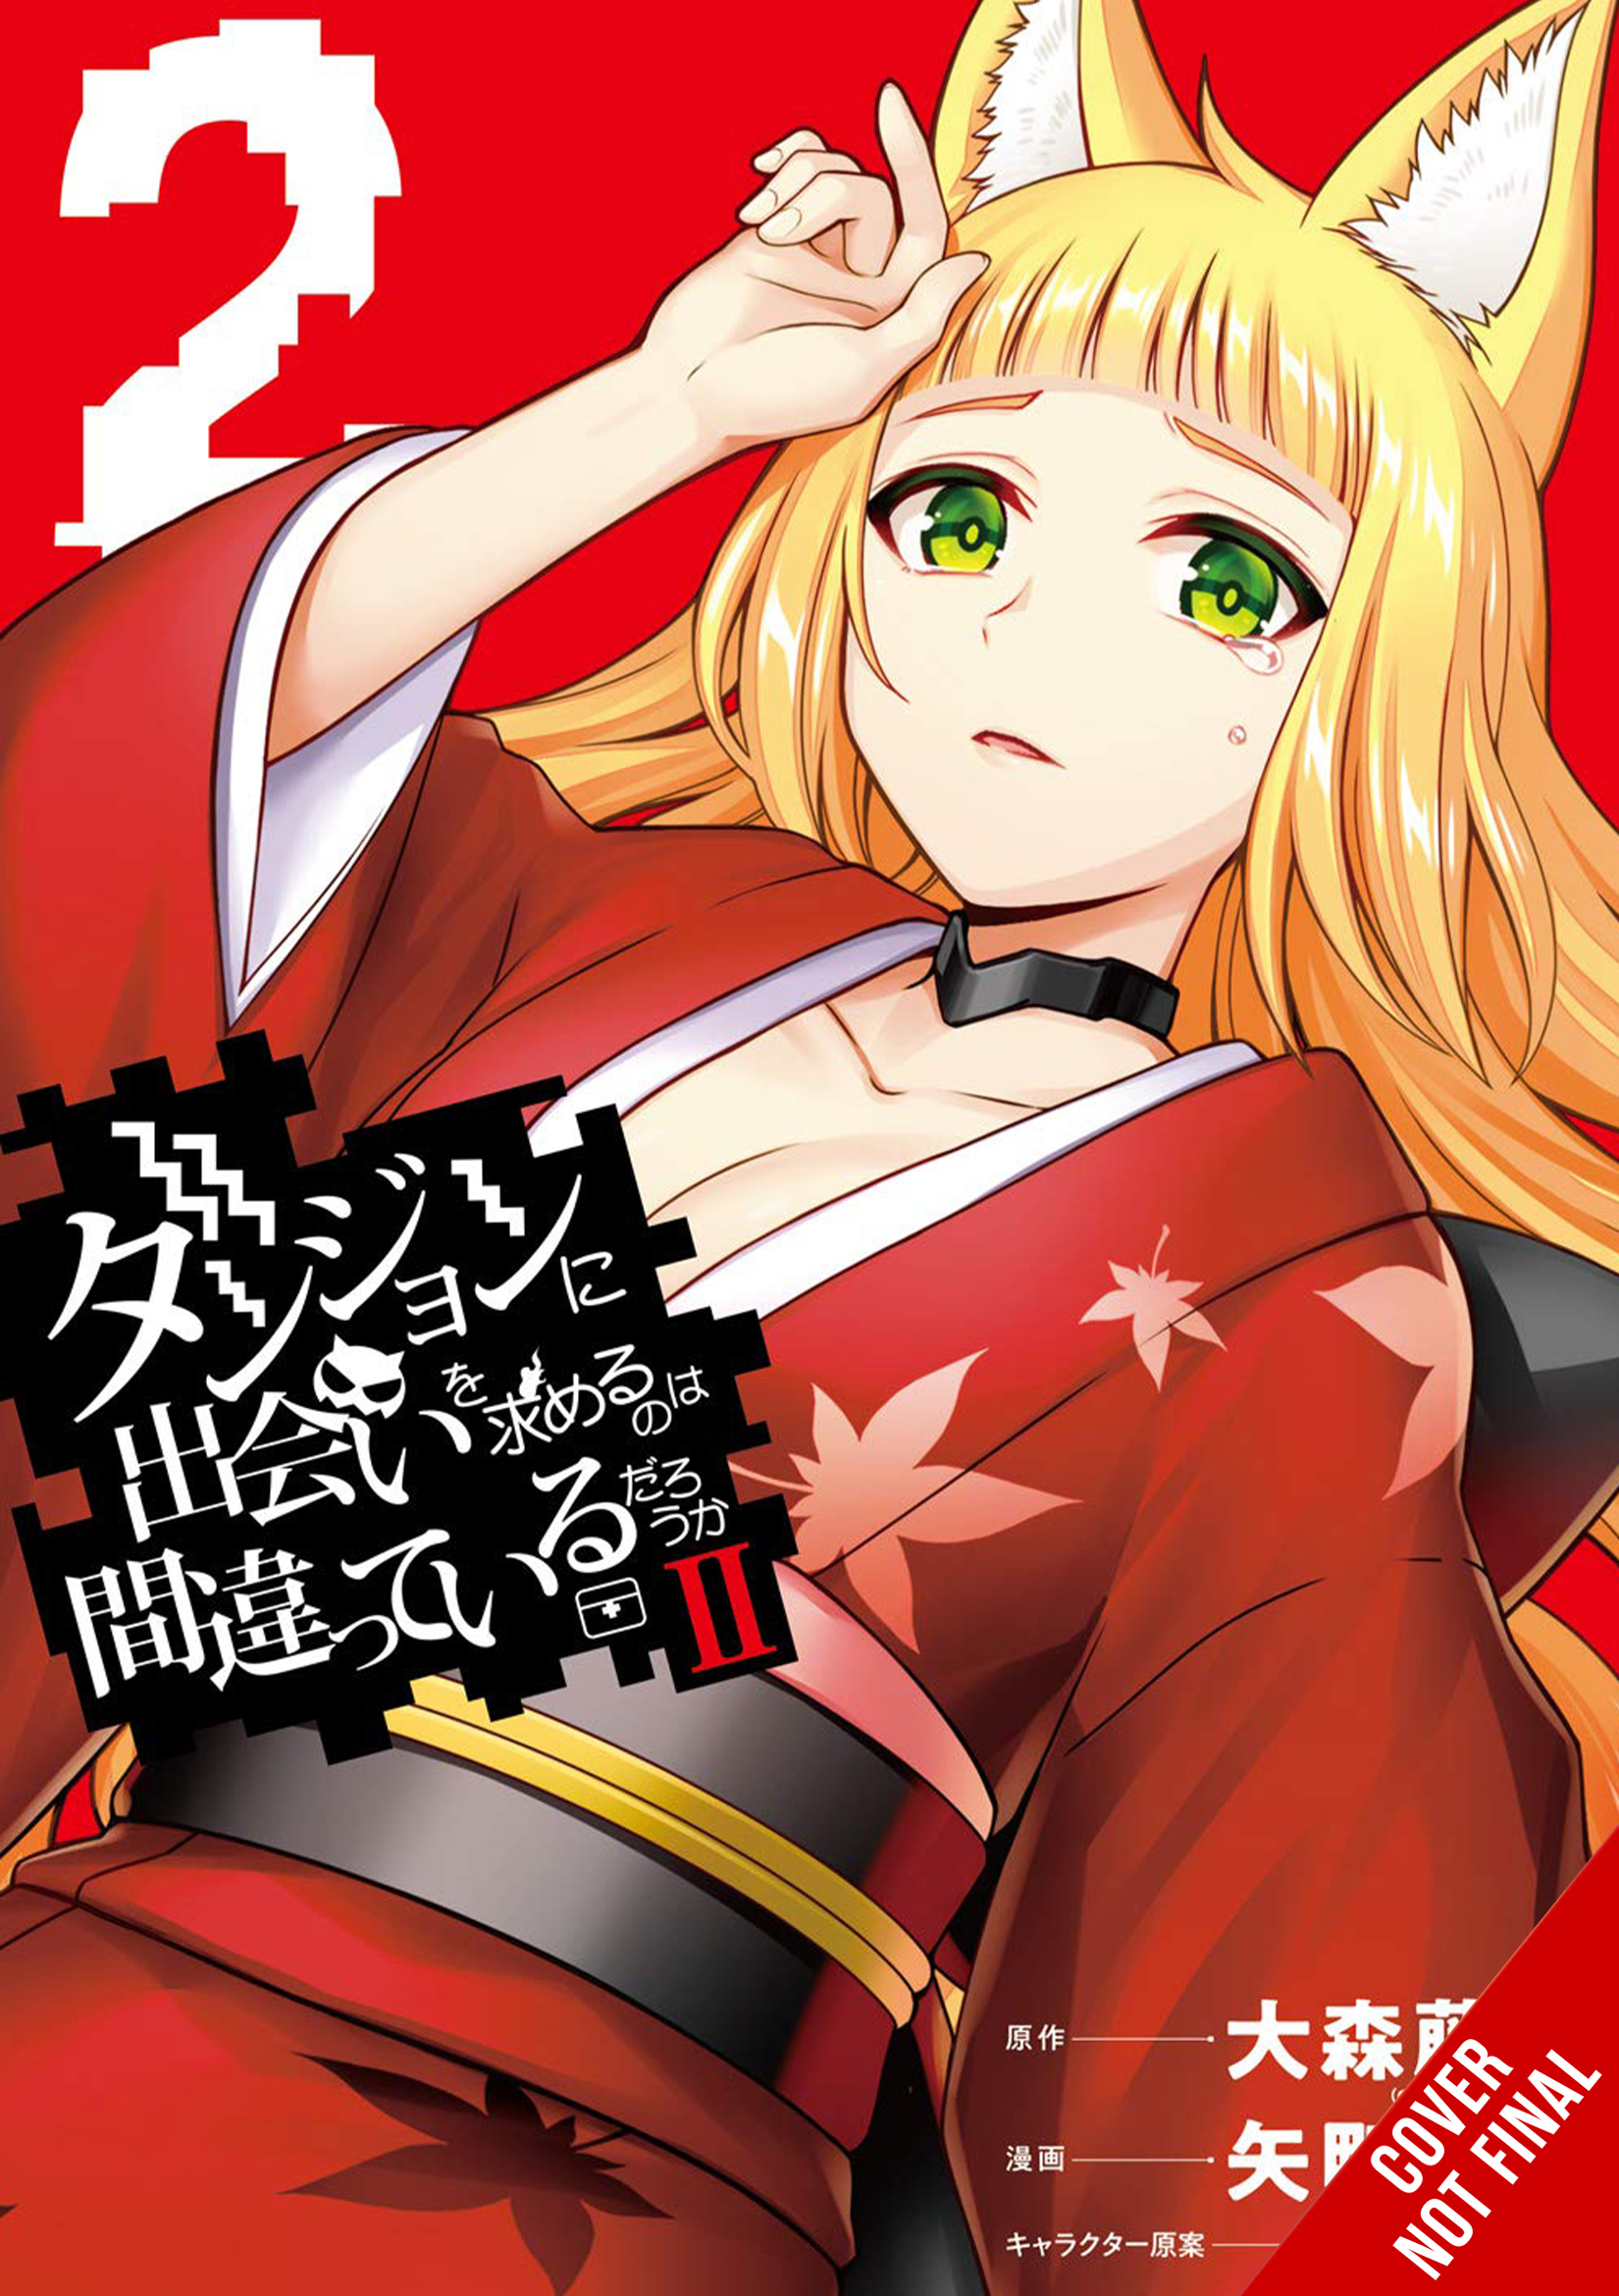 Wrong To Pick Up Girls In Dungeon II Manga Volume 2